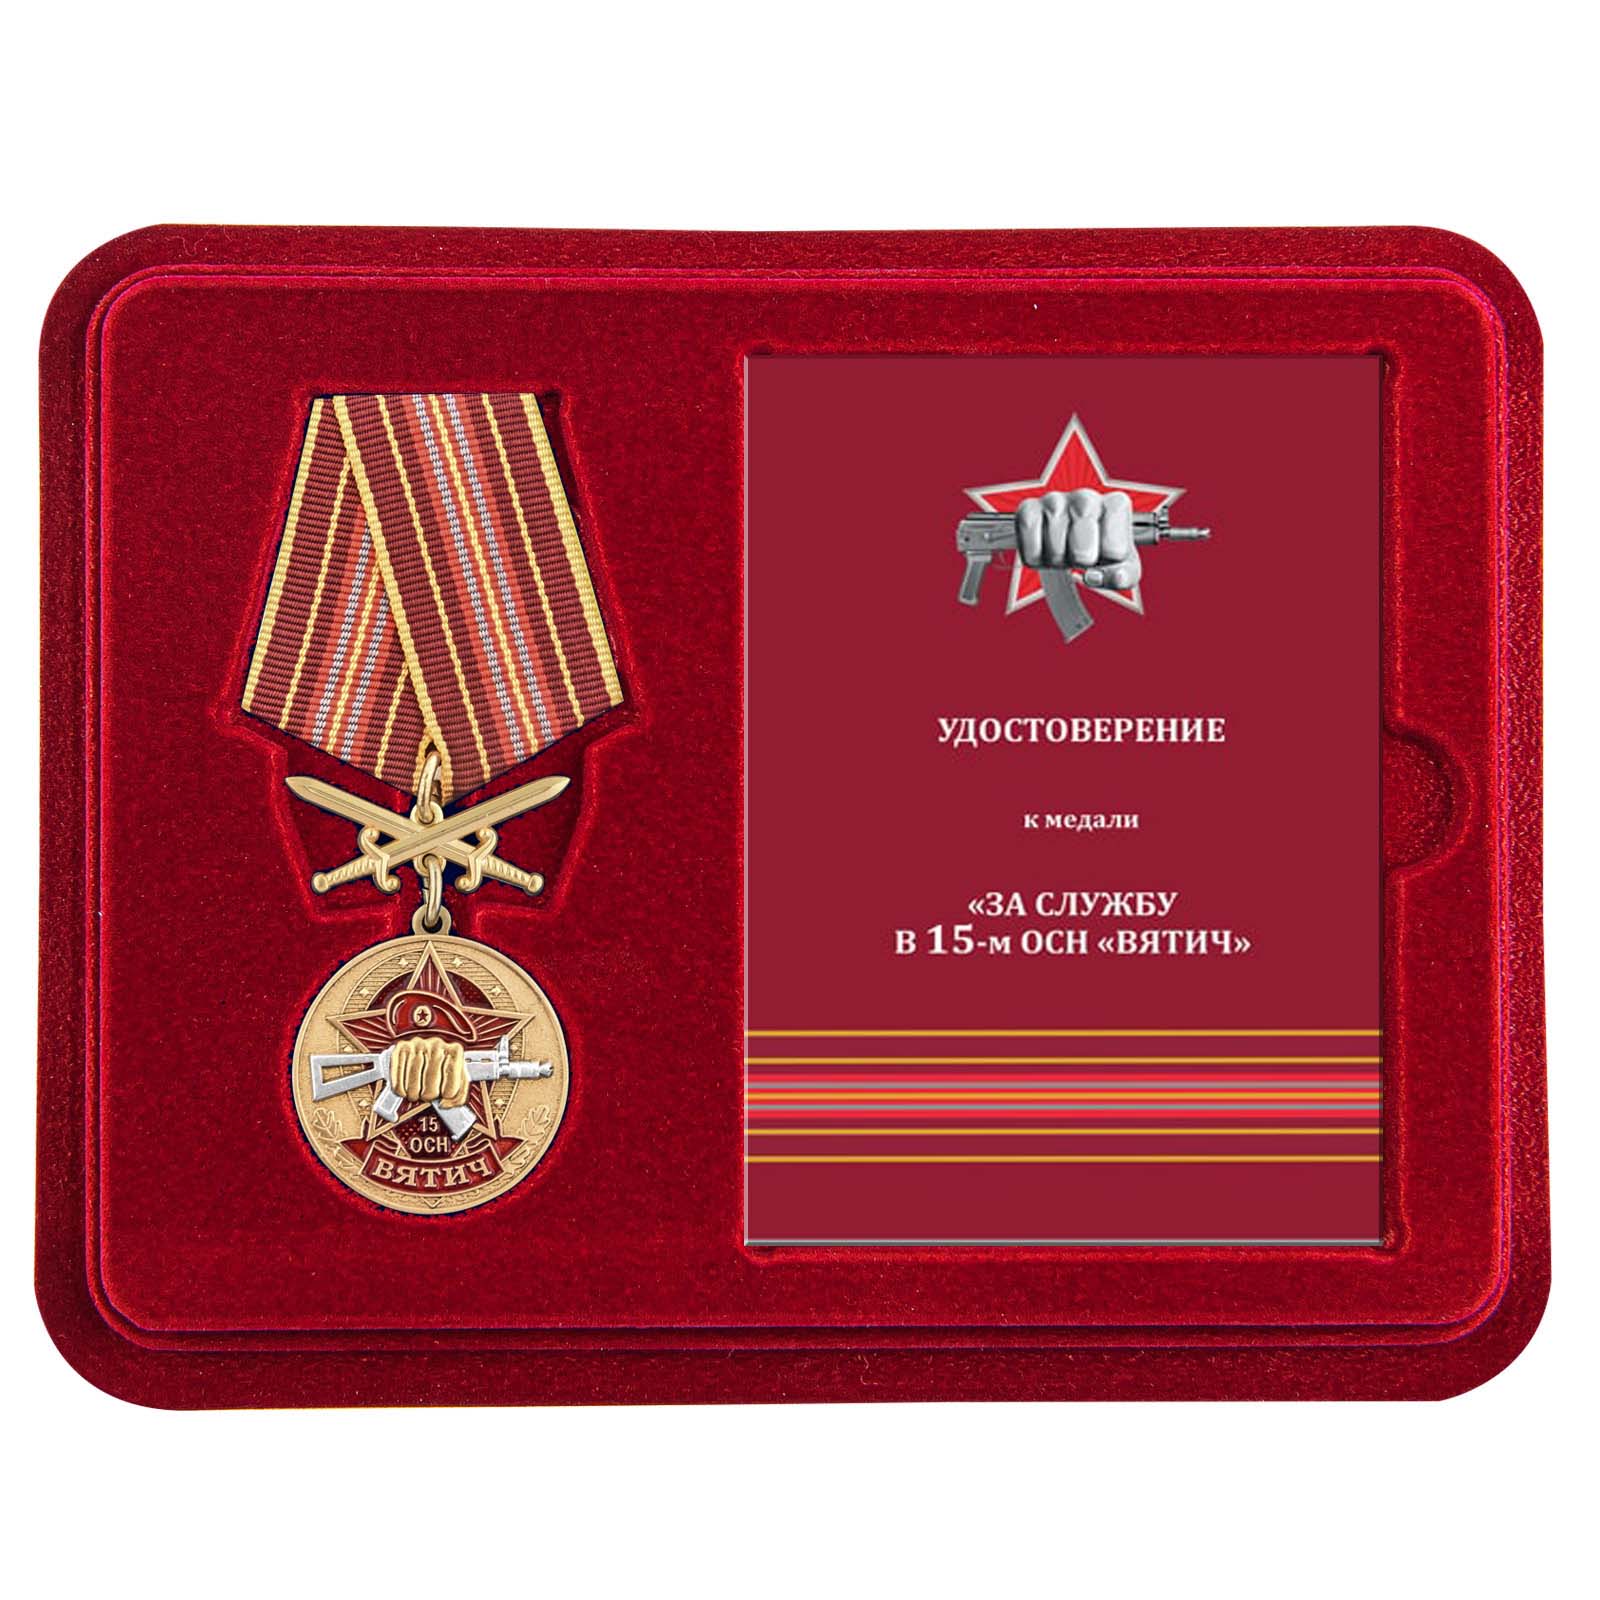 Медаль За службу в 15 ОСН "Вятич" в футляре с удостоверением